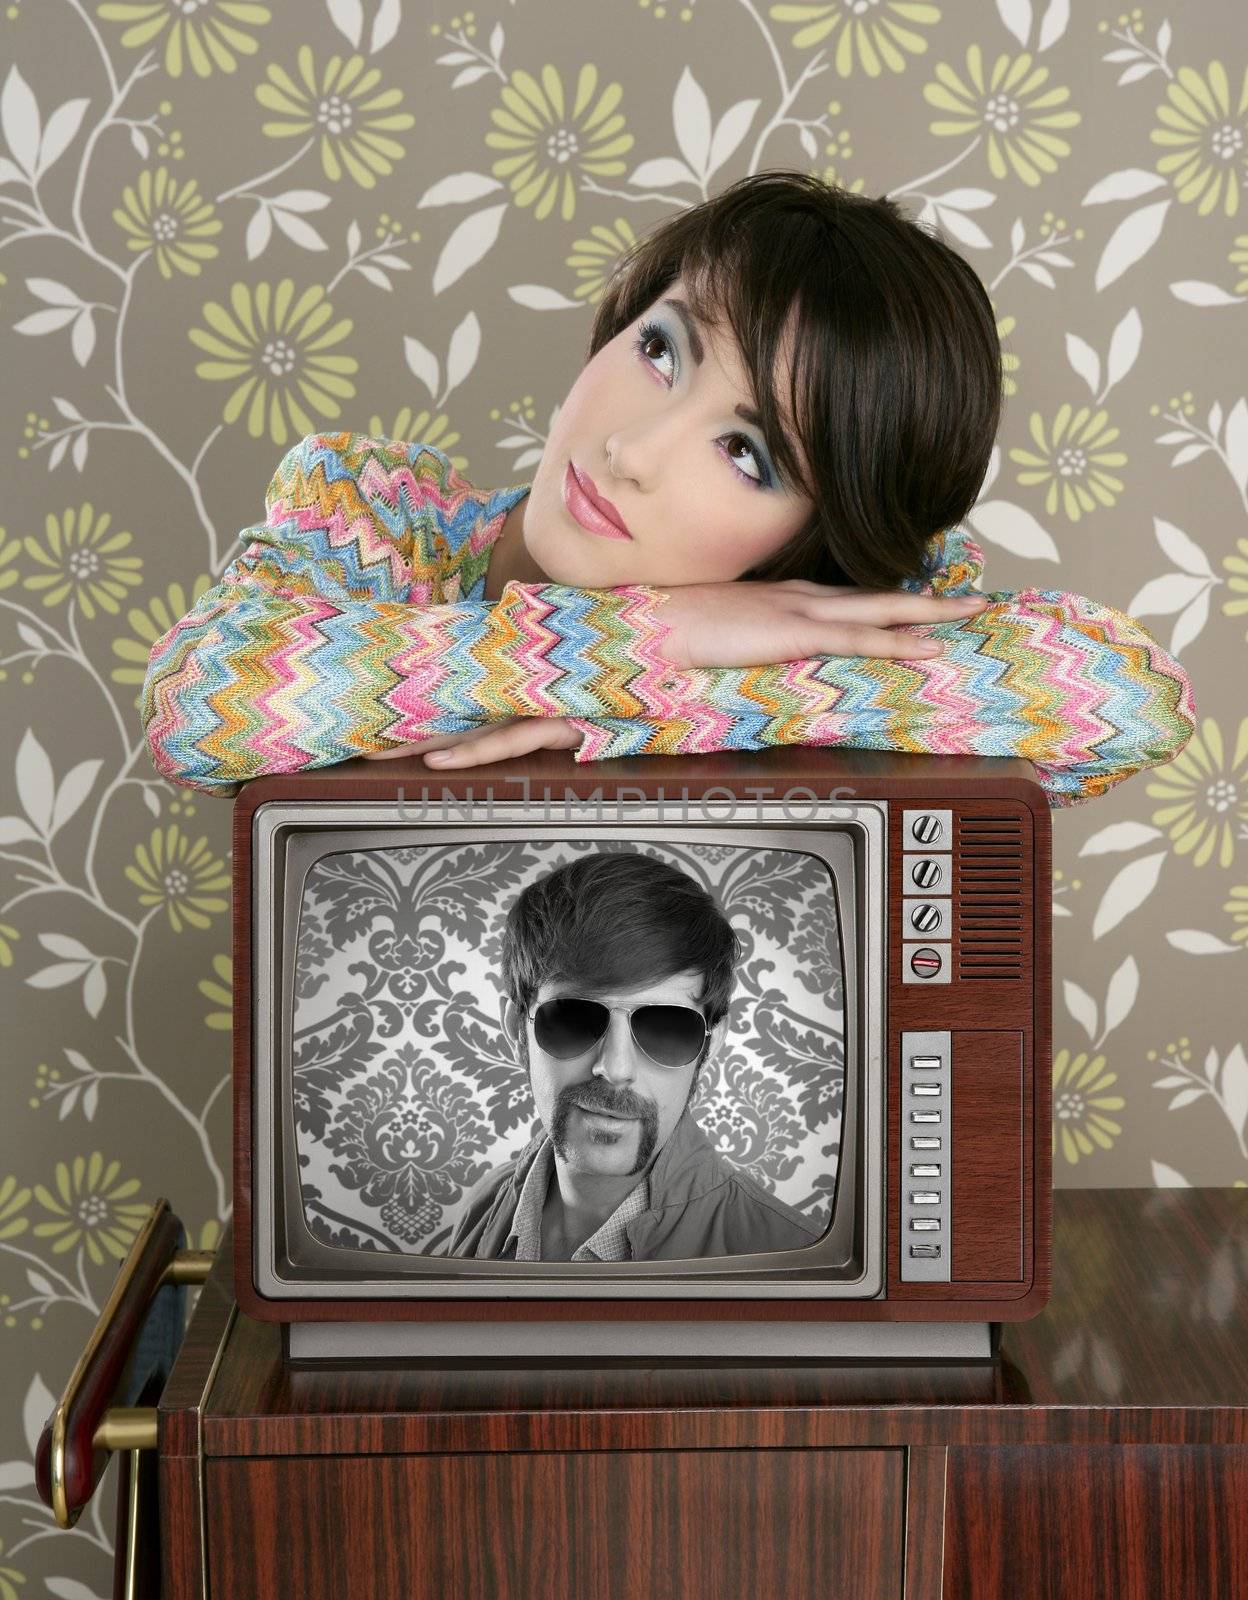 retro woman in love with tv nerd mustache hero vintage 60s wallpaper